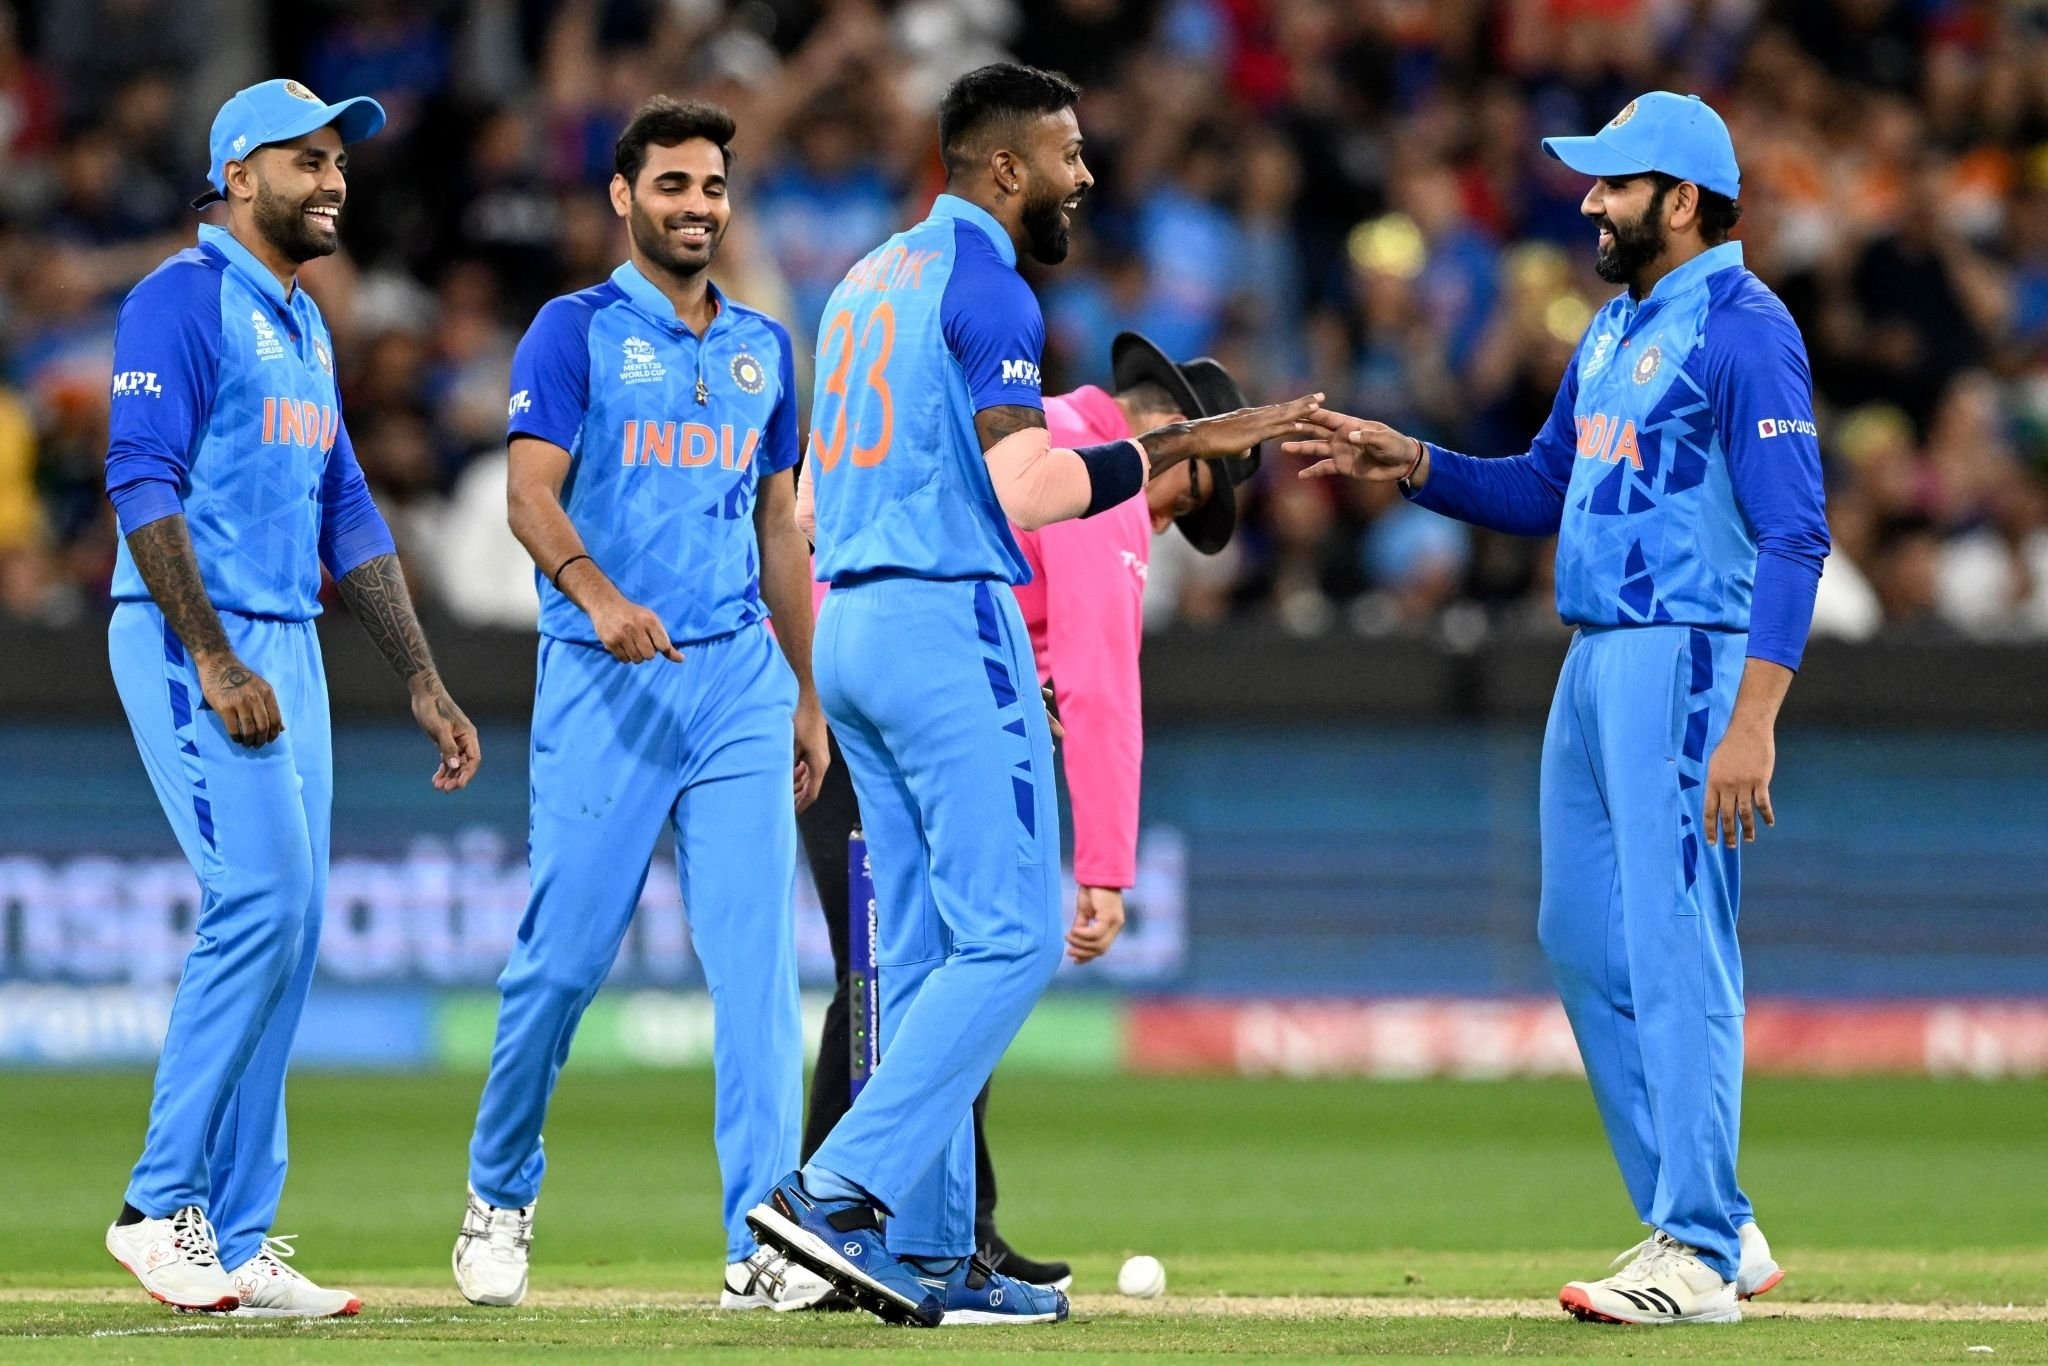 India T20 Captaincy: Hardik Pandya टी20 कप्तानी के लिए Rohit Sharma पर लगा रहे बडे आरोप, कहा कप्तान की वजह से हारे सेमीफाईनल